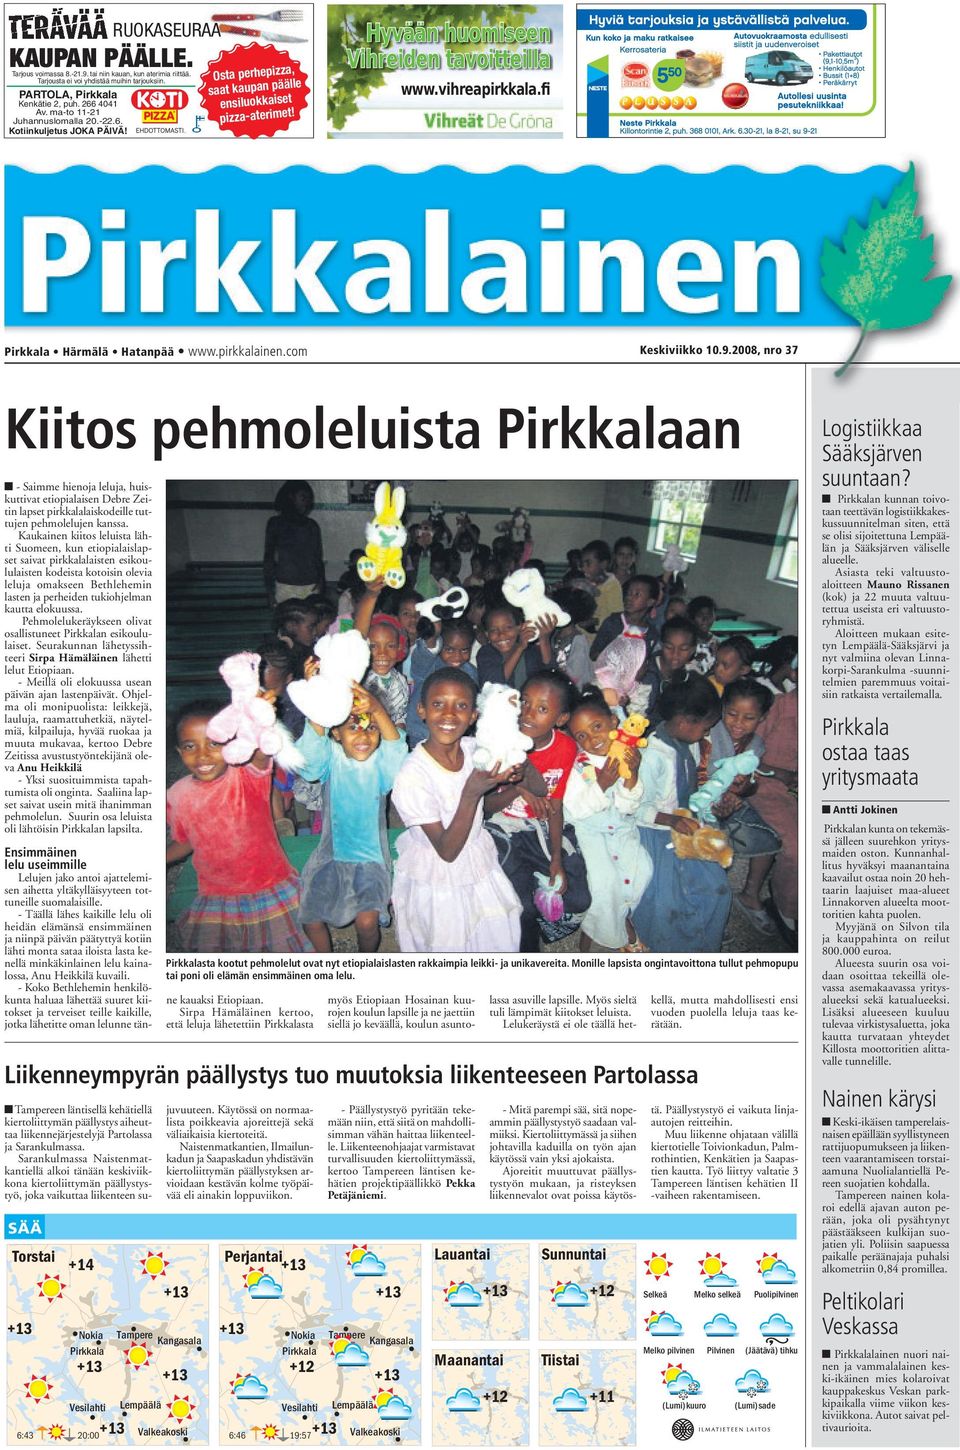 vihreapirkkala.fi Pirkkala Härmälä Hatanpää www.pirkkalainen.com Keskiviikko 10.9.